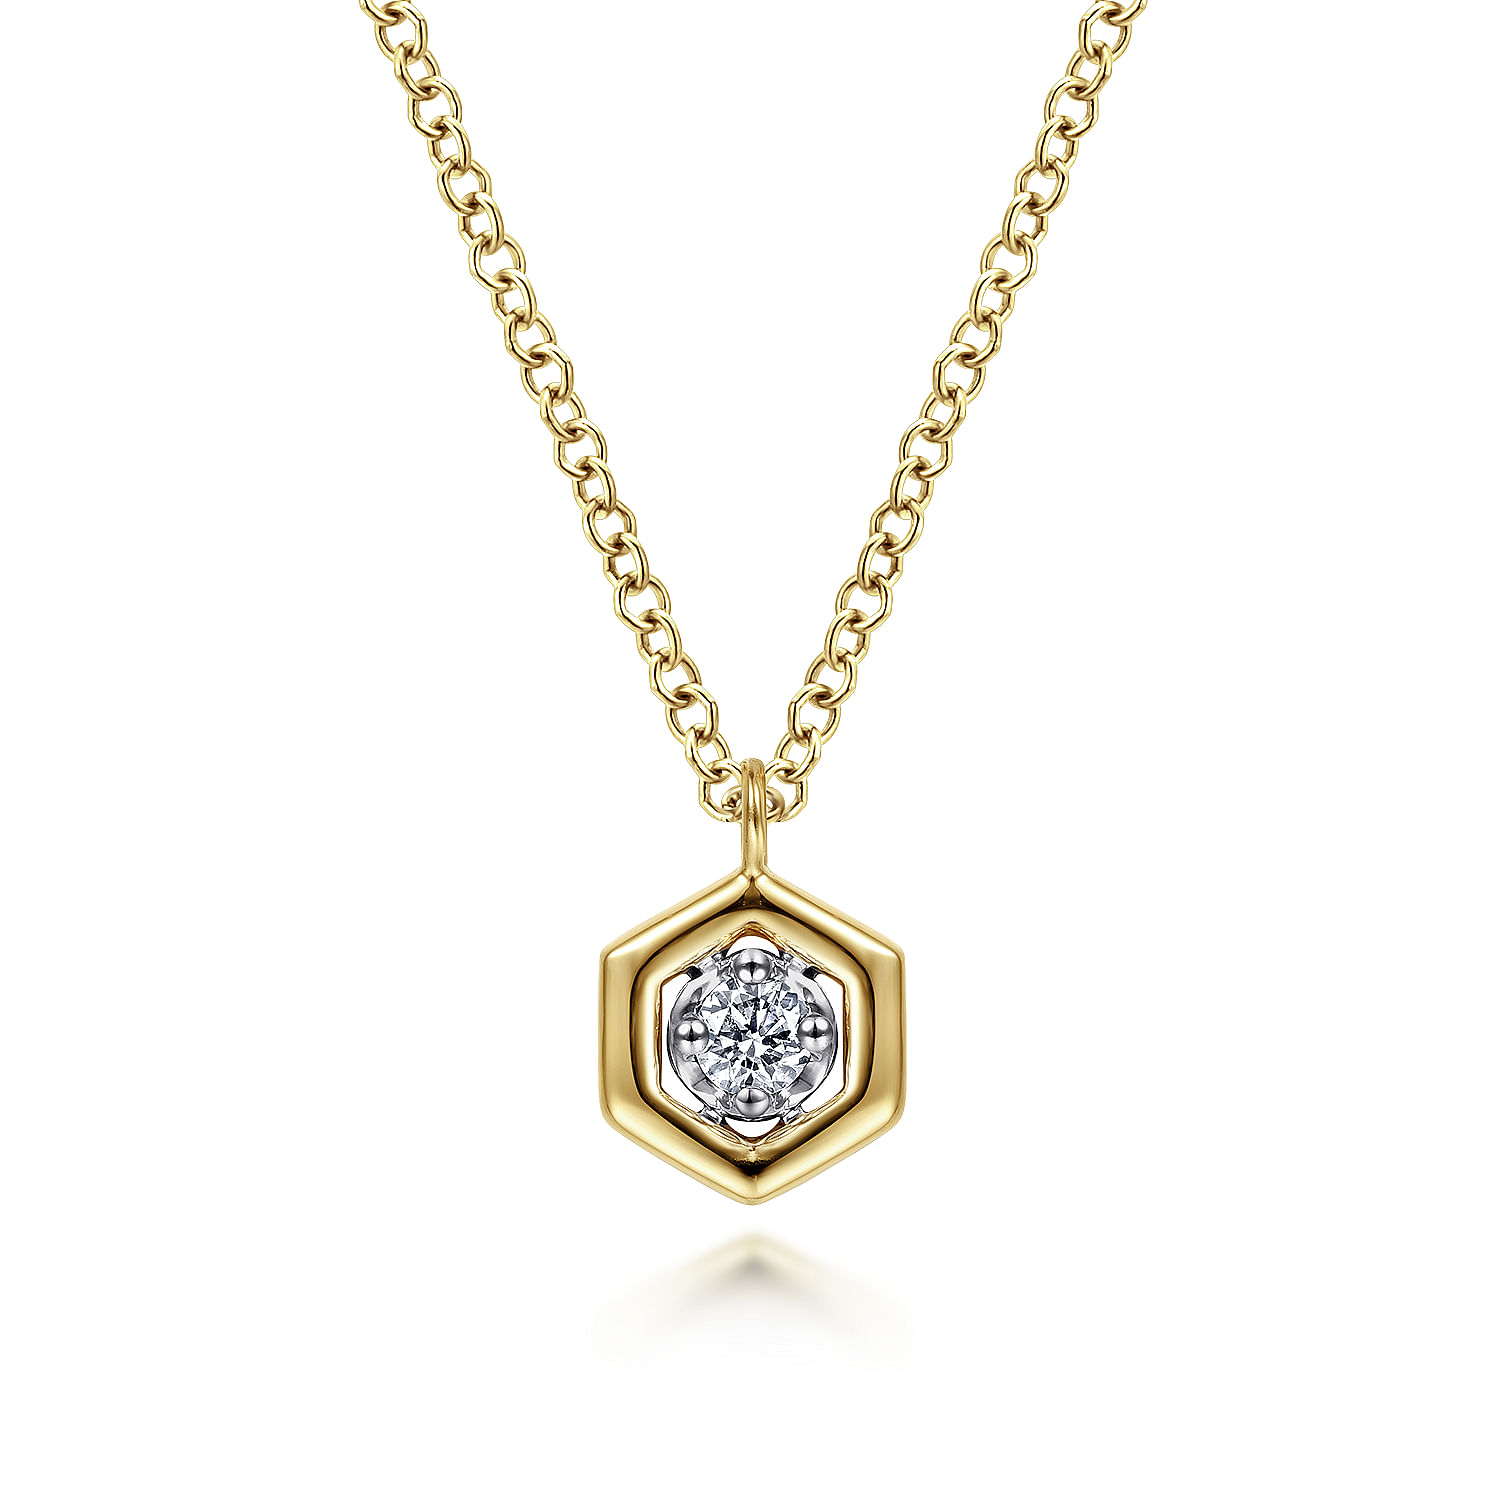 14K Yellow-White Gold Round Diamond Pendant Necklace with Hexagonal Frame